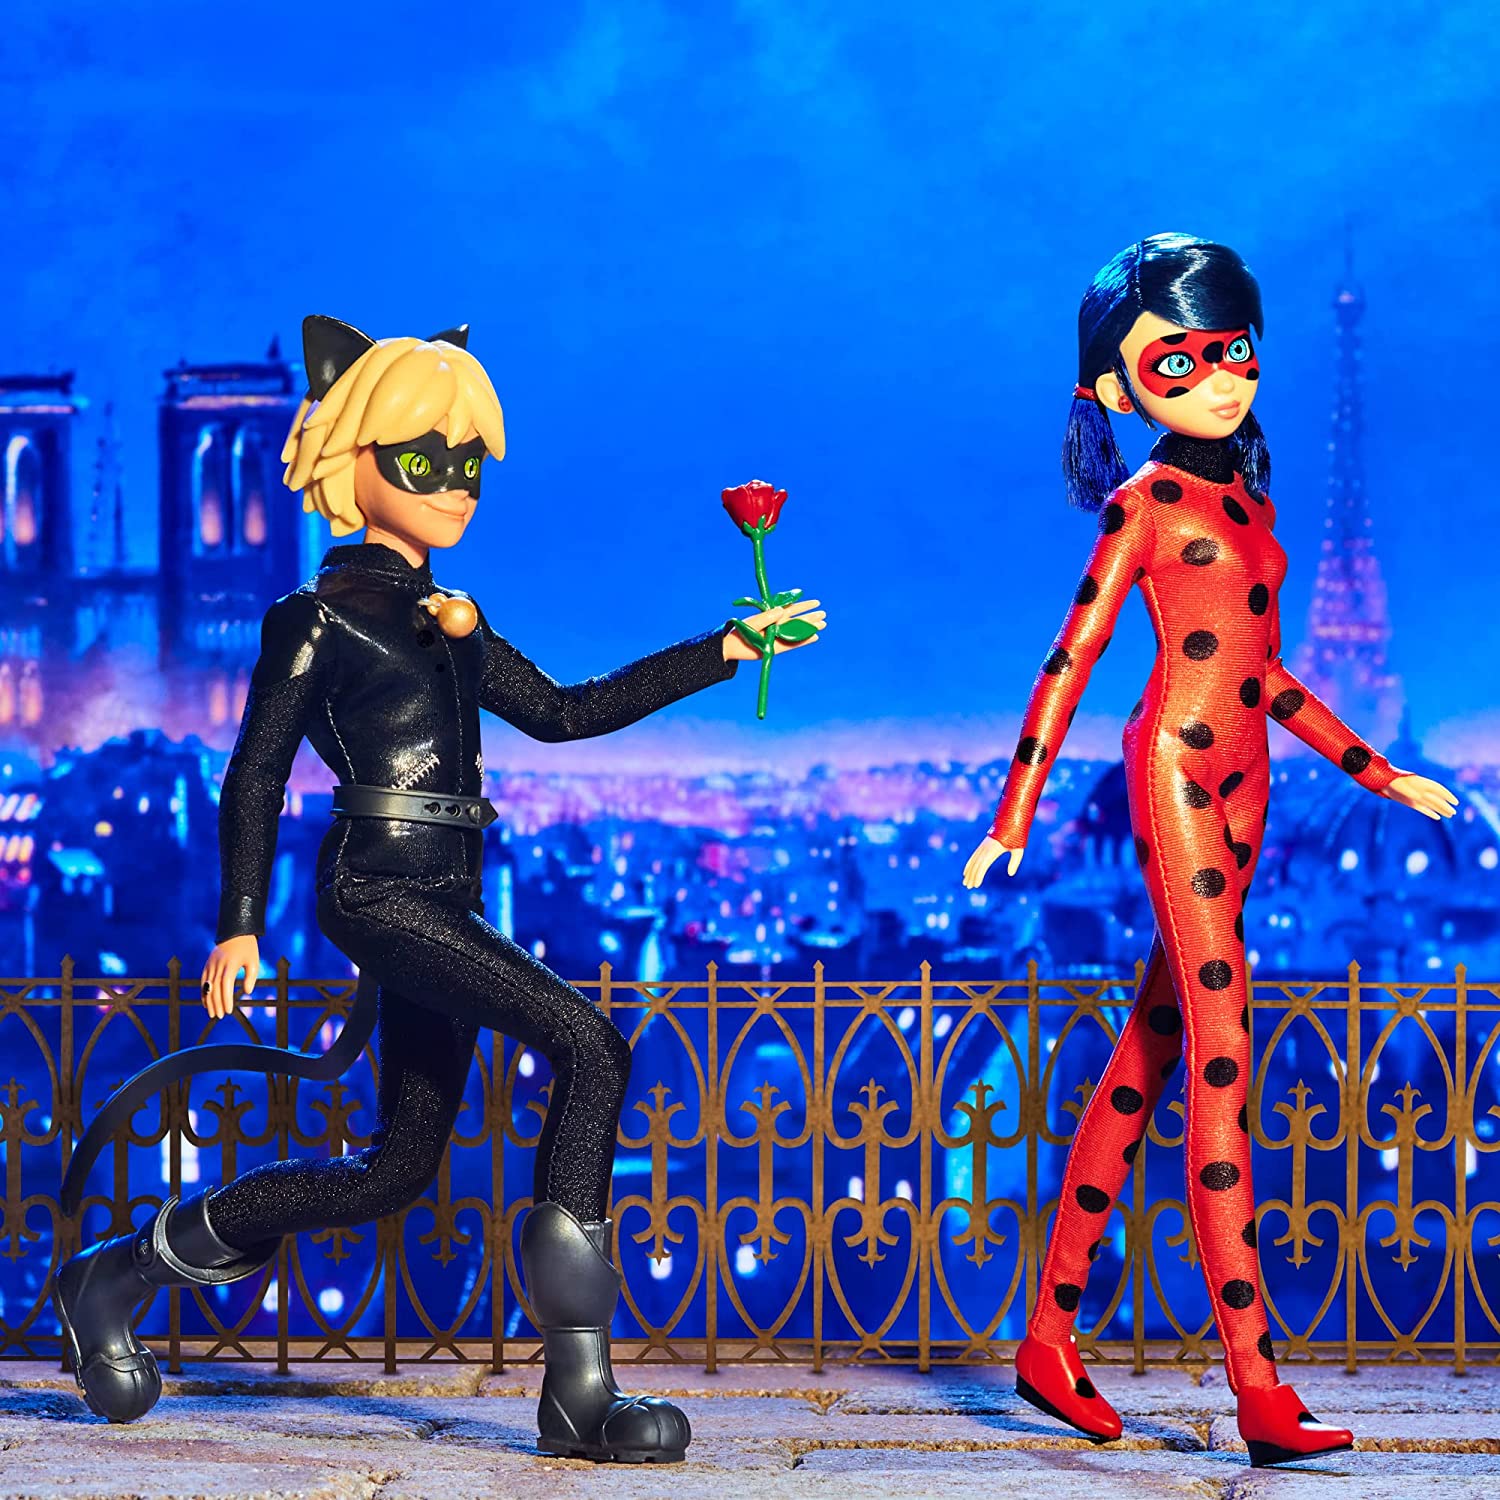 Animation: Miraculous Ladybug - Cat Noir Fashion Doll